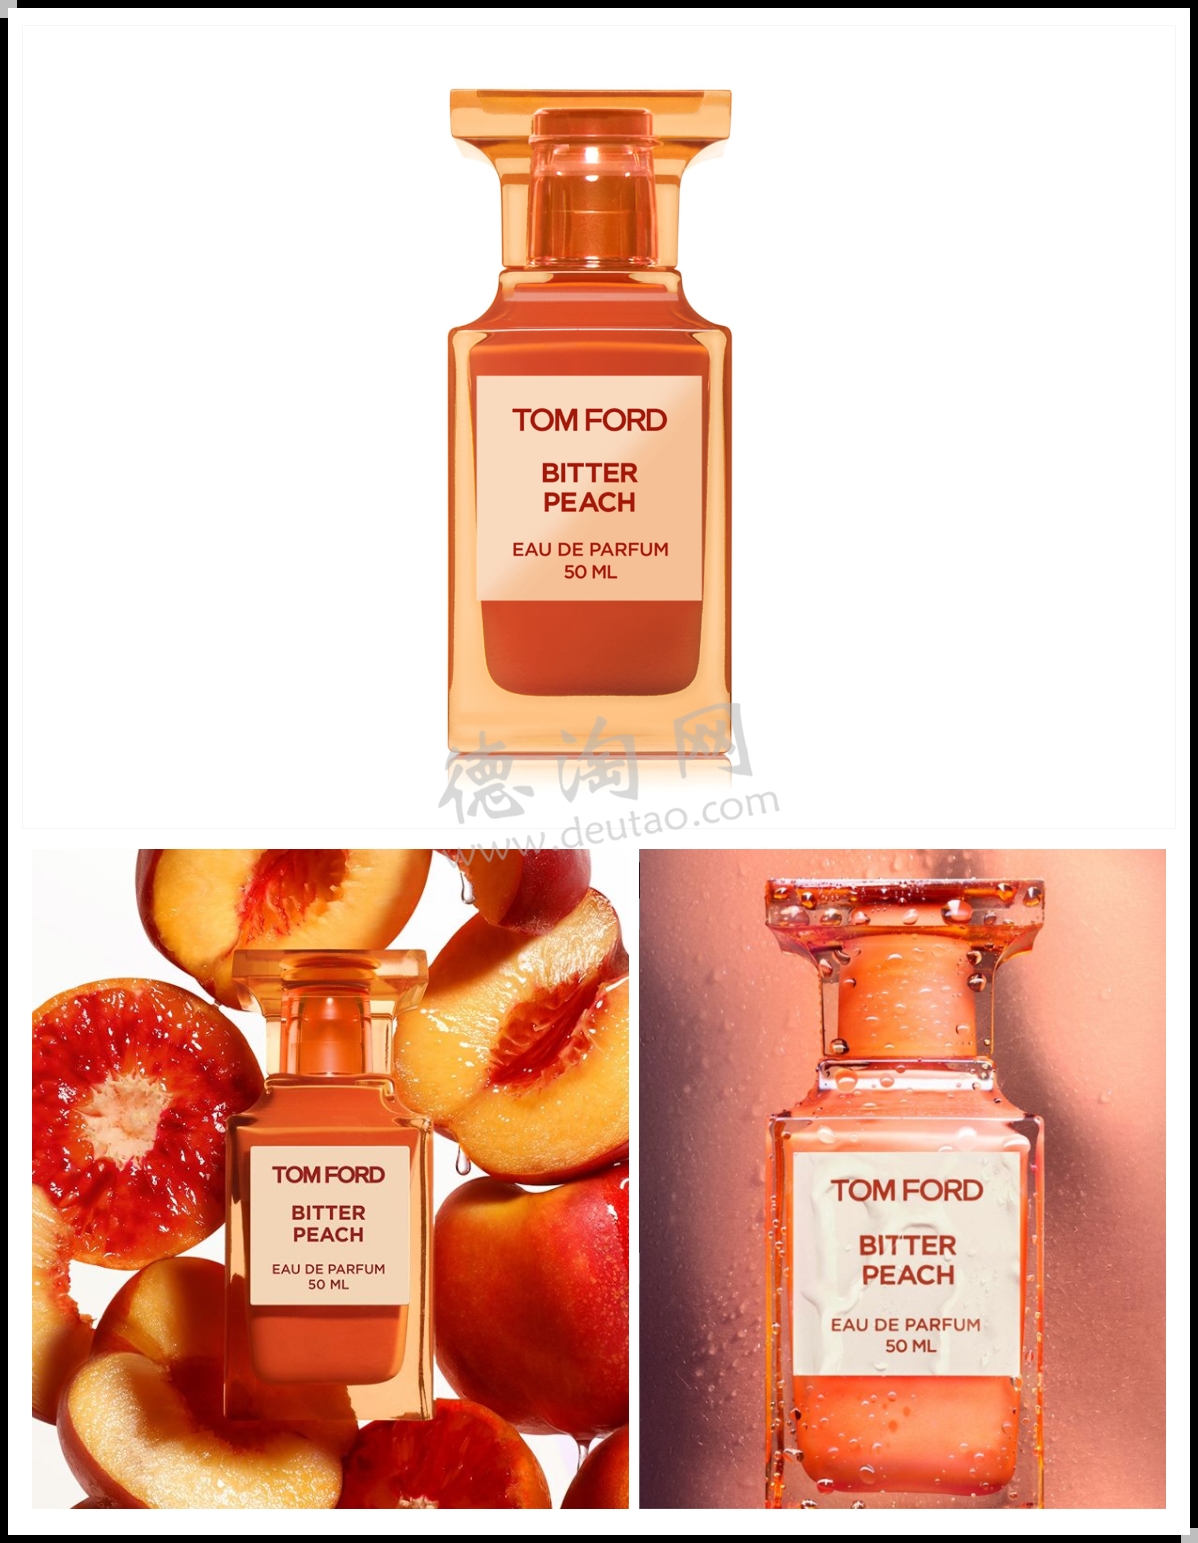 咬一口多汁甜美的桃子！Tom Ford 私人调香系列新品#Bitter Peach双十一